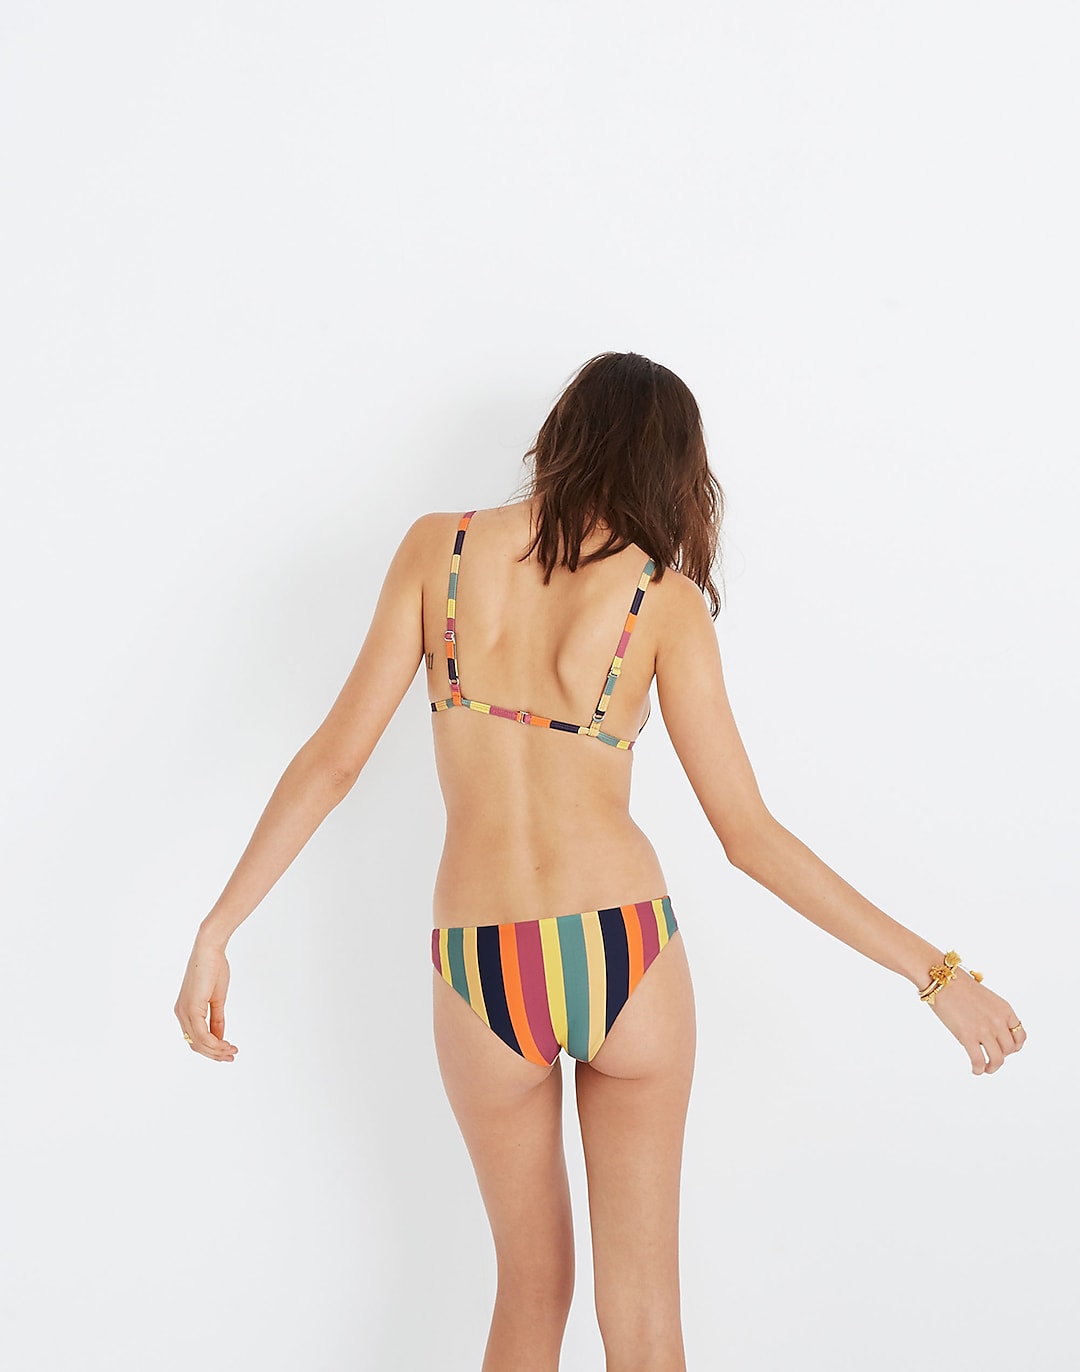 Madewell x Tavik® Jett Bikini Top in Rainbow Stripe